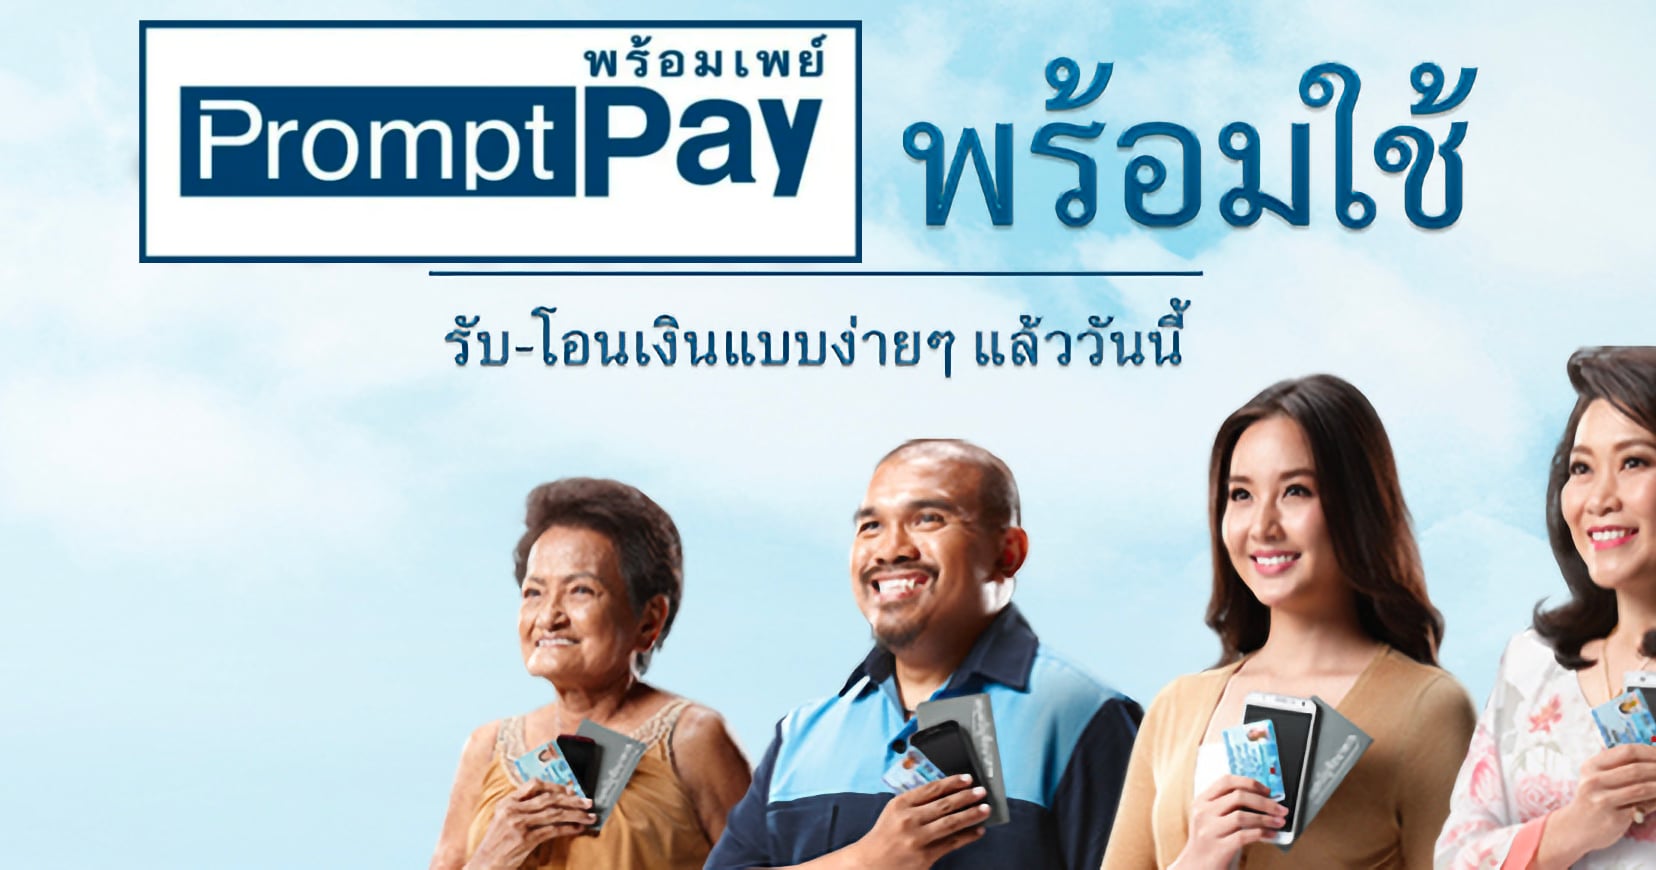 สมาคมธนาคารไทยแถลงขอโทษผู้ใช้ หลังโอนพร้อมเพย์เมื่อ 1 ต.ค. แล้วเงินไม่เข้า